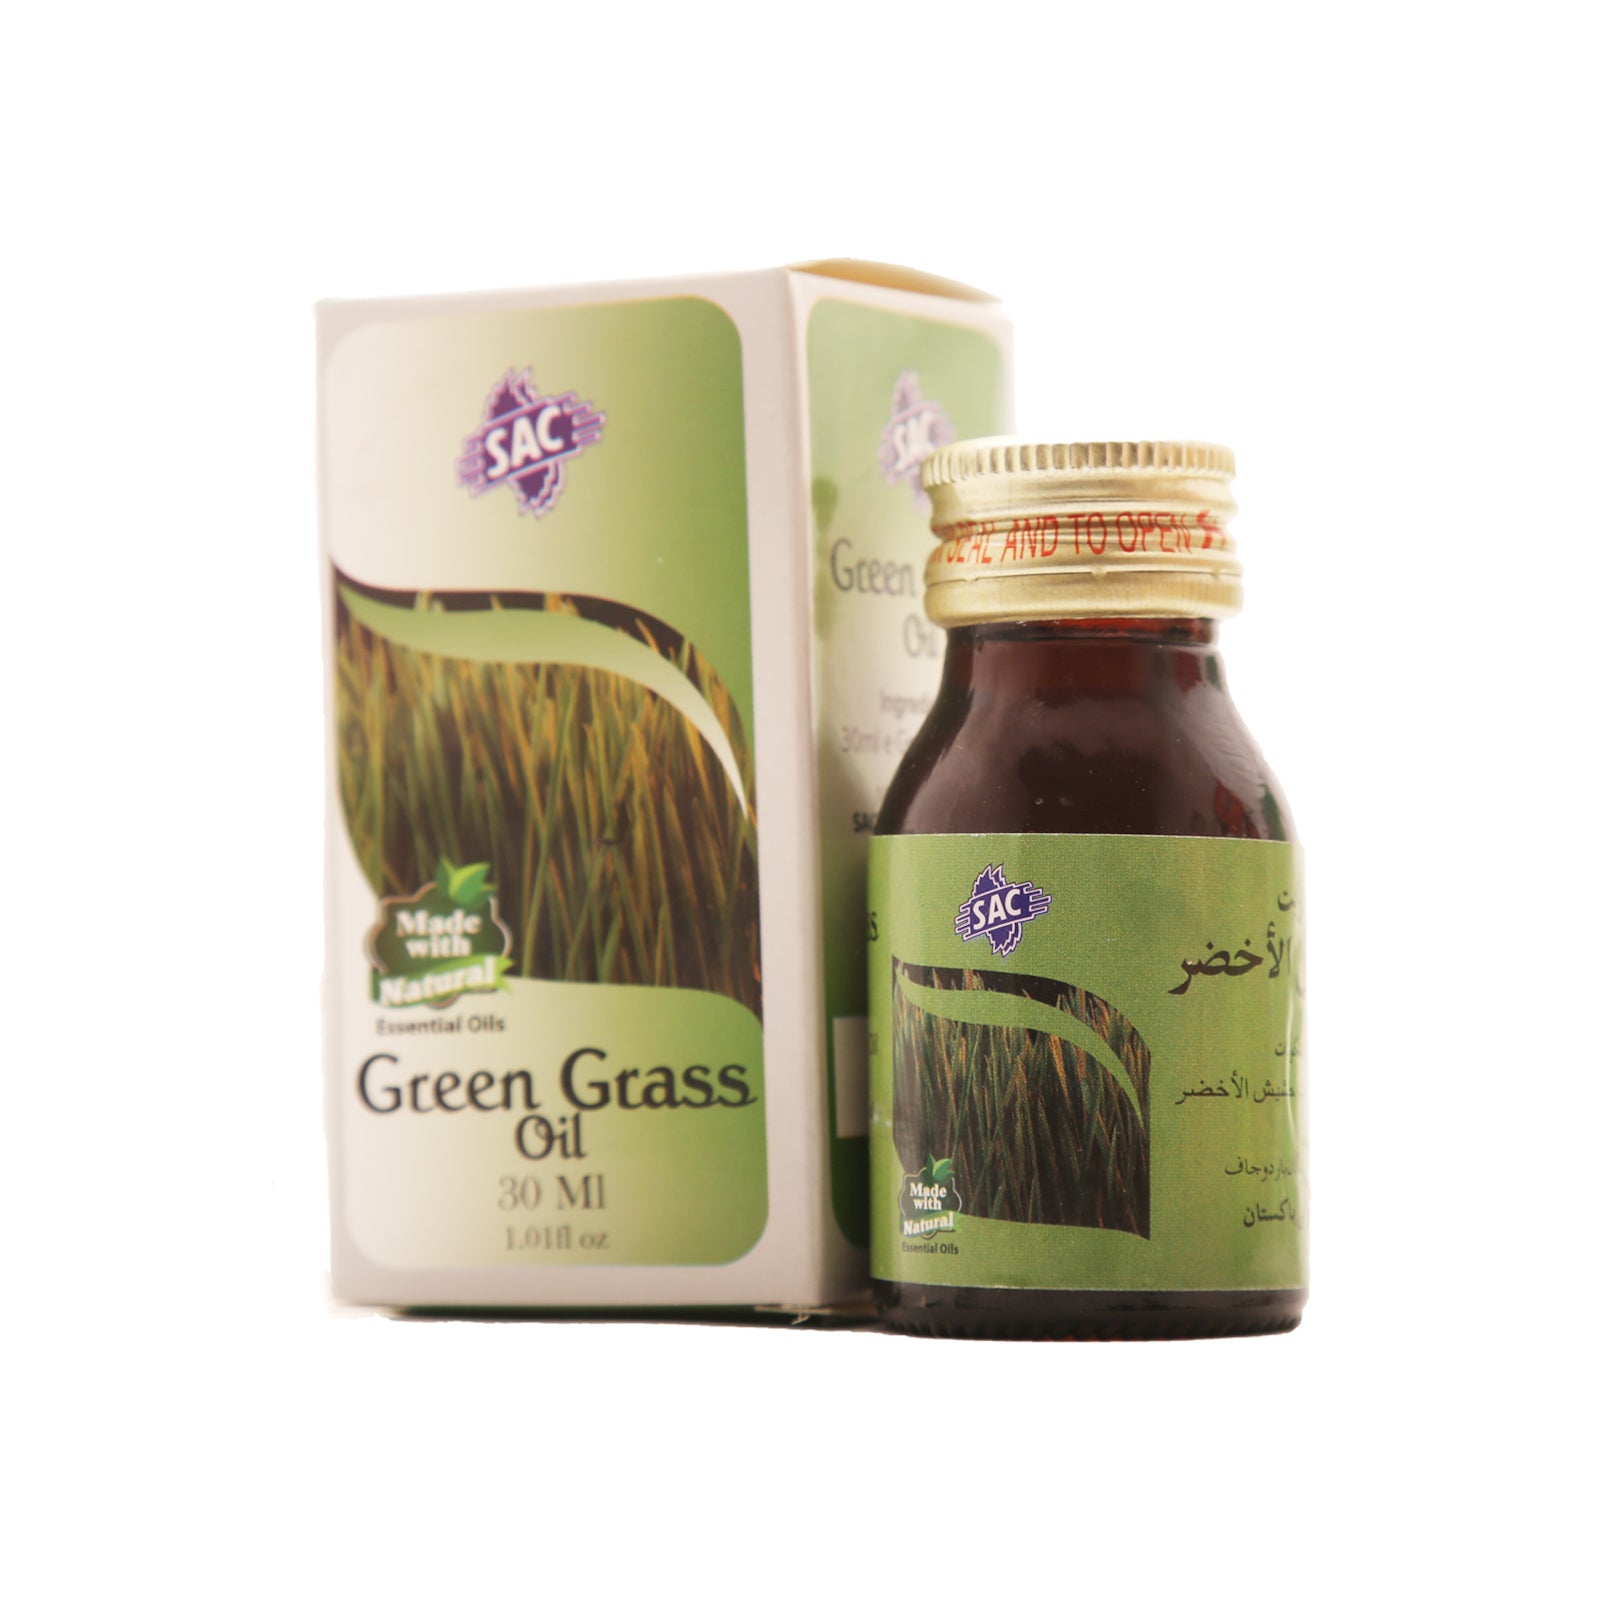 Green Grass Oil